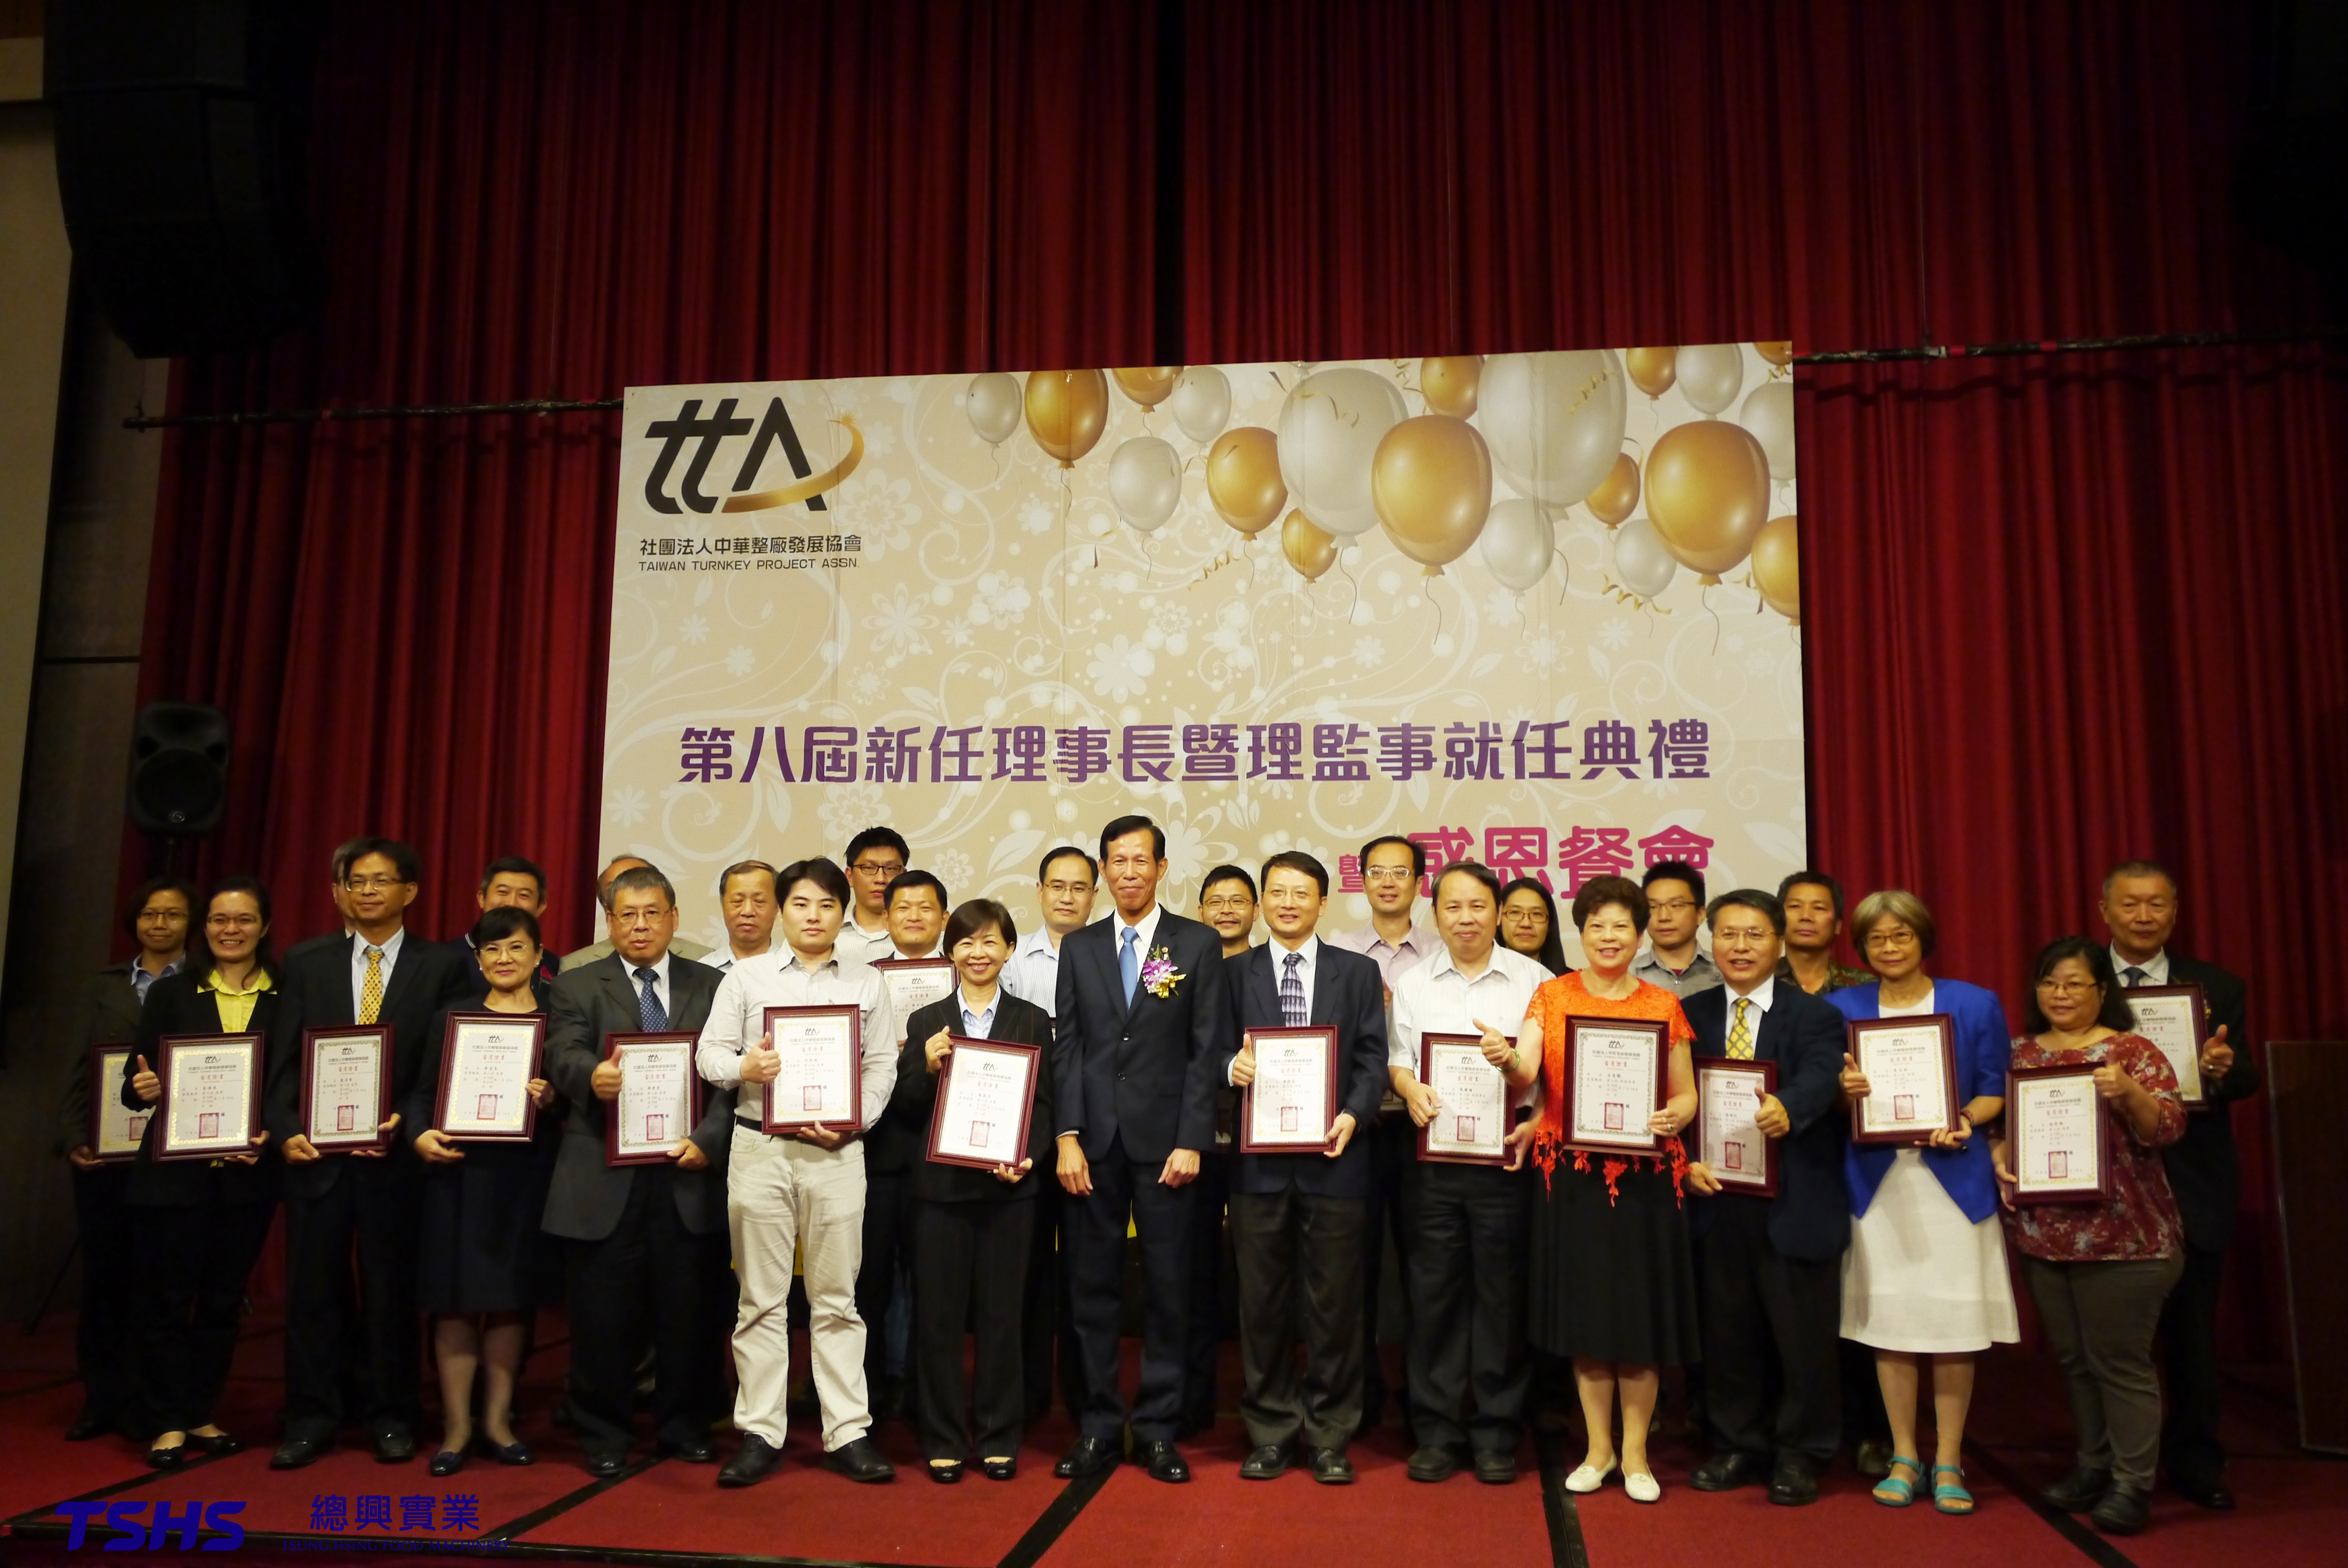 جمعية مشاريع تايوان الشاملة